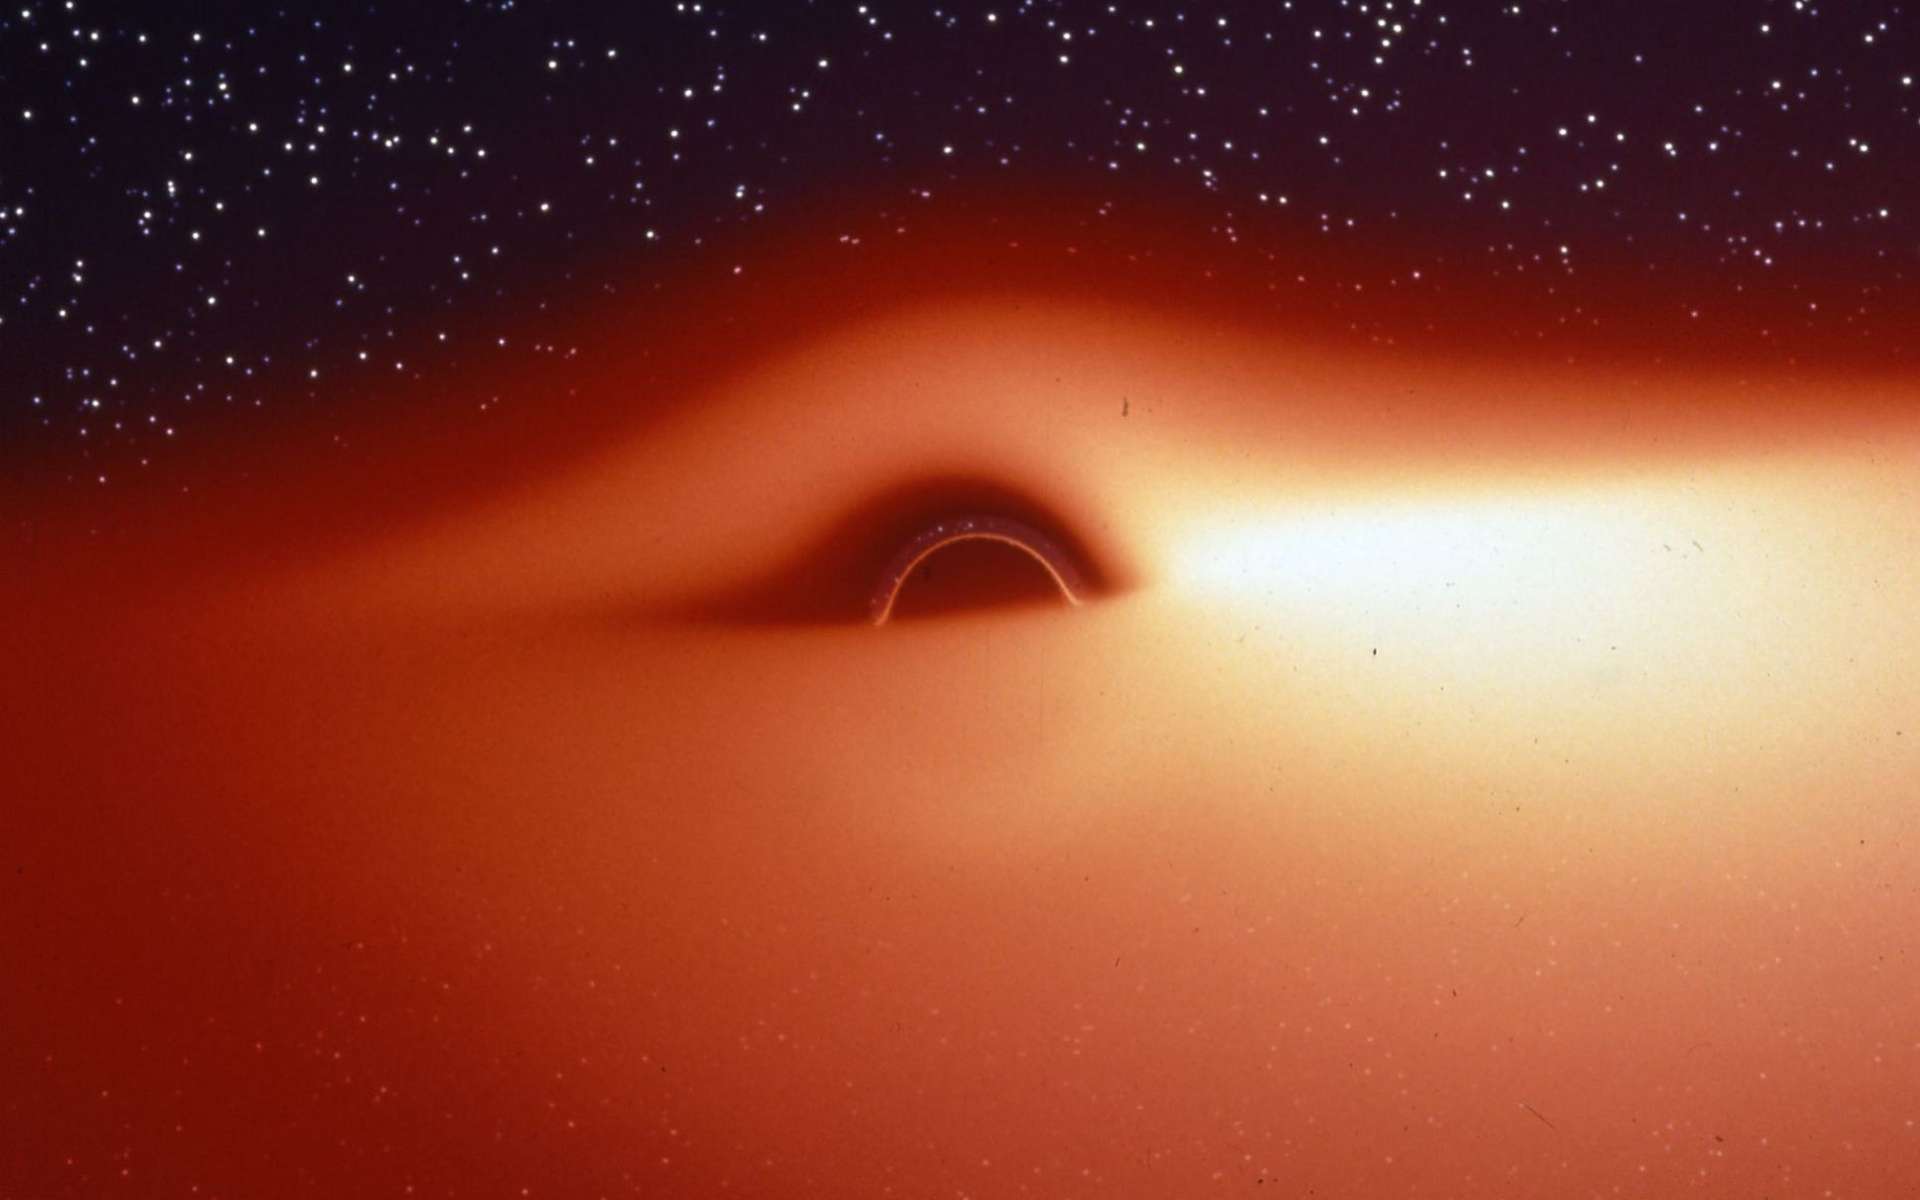 Le champ de gravitation d'un trou noir déforme fortement l'image du disque d'accrétion qui l'entoure et qui contient un plasma chaud et lumineux en rotation autour de l'astre. On peut s'en rendre compte avec cette image, extraite d'une simulation de ce que verrait un observateur s'approchant de l'astre compact selon une direction légèrement inclinée au-dessus du disque d'accrétion. La partie du disque située derrière le trou noir semble tordue à 90° et devient visible au-dessus du trou noir. Du fait du décalage Doppler, le disque d'accrétion est plus lumineux d'un côté que de l'autre. Jean-Pierre Luminet a fait la première simulation de ces images en 1979, bien avant celle montrée dans Interstellar qui contient, fiction oblige, quelques simplifications trompeuses. © Jean-Pierre Luminet, Jean-Alain Marck